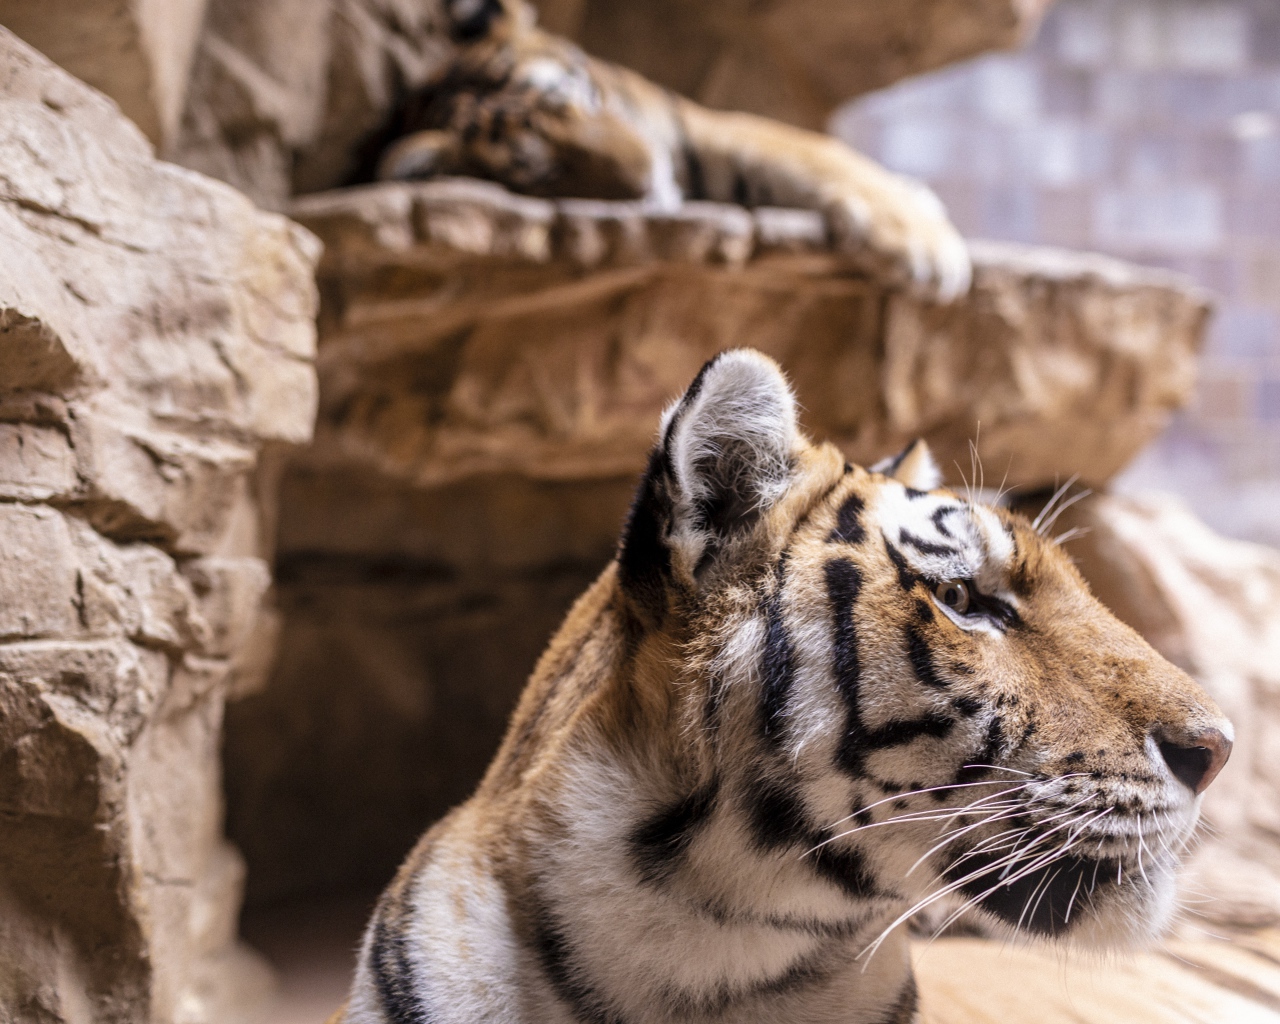 Морда полосатого тигра у камней в зоопарке 